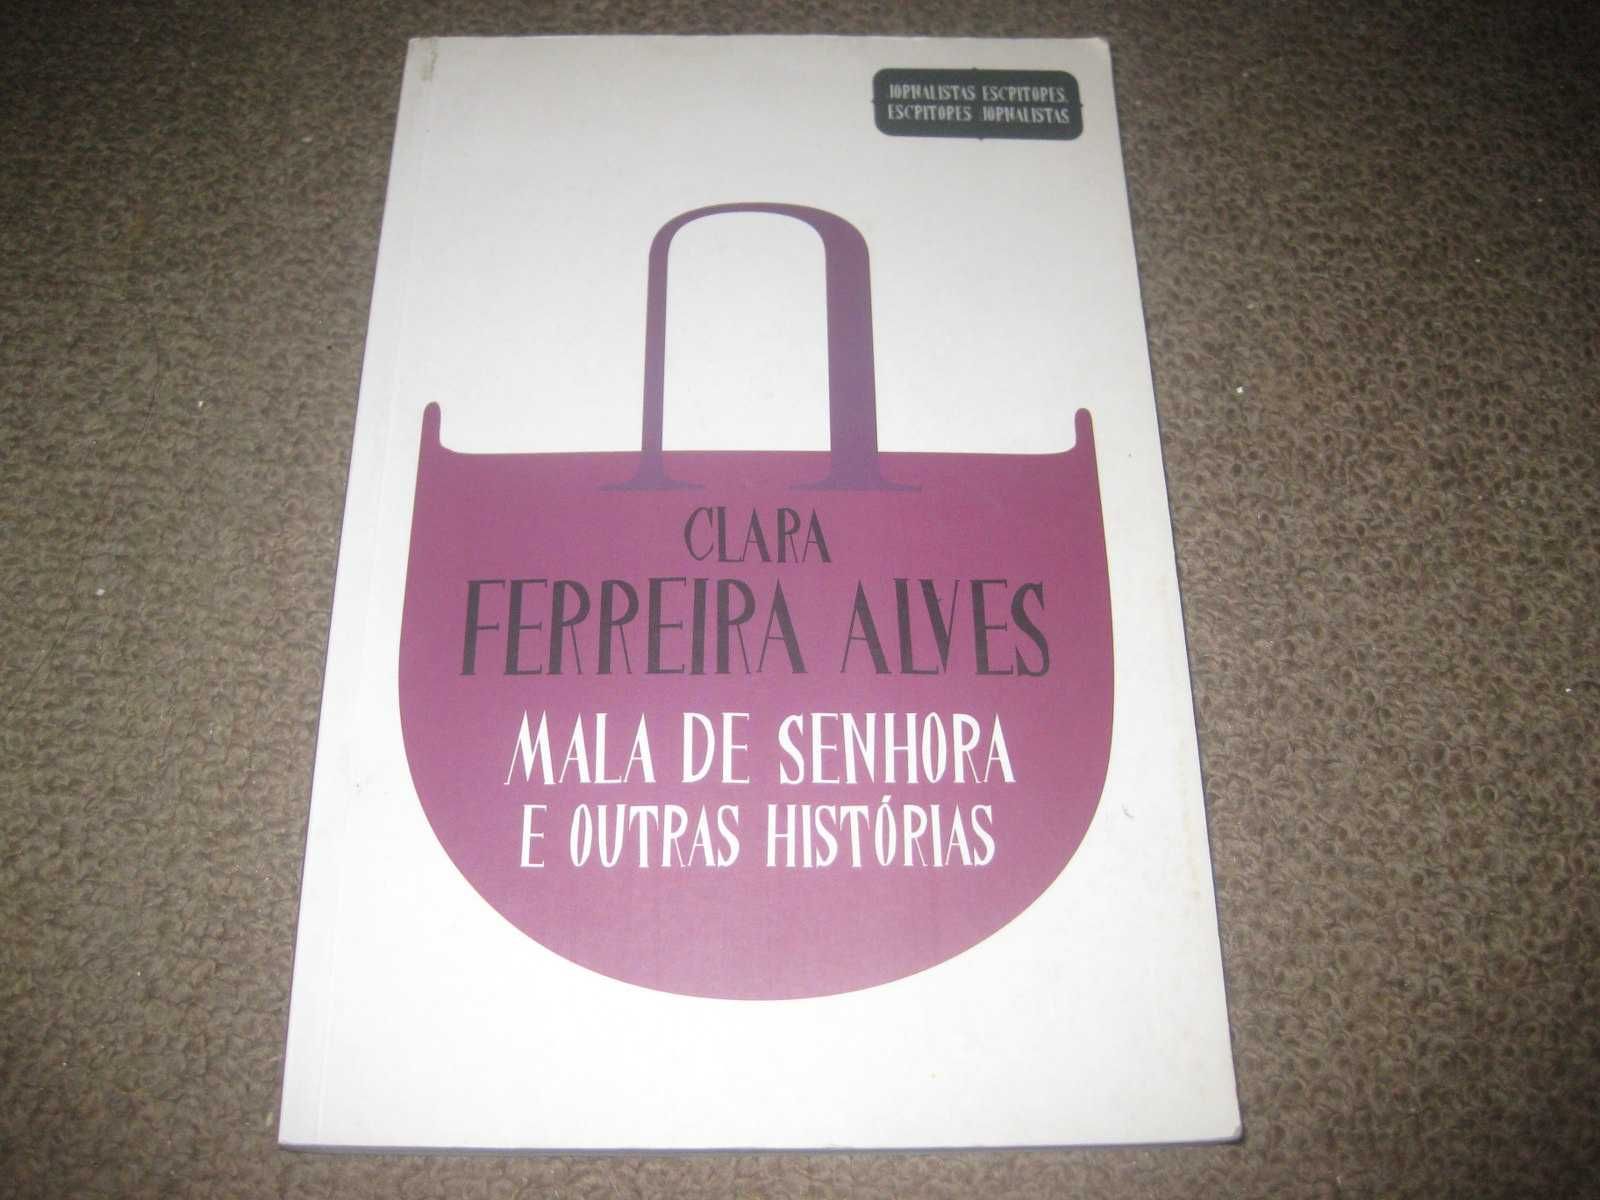 Livro "Mala de Senhora e Outras Histórias" de Clara Ferreira Alves